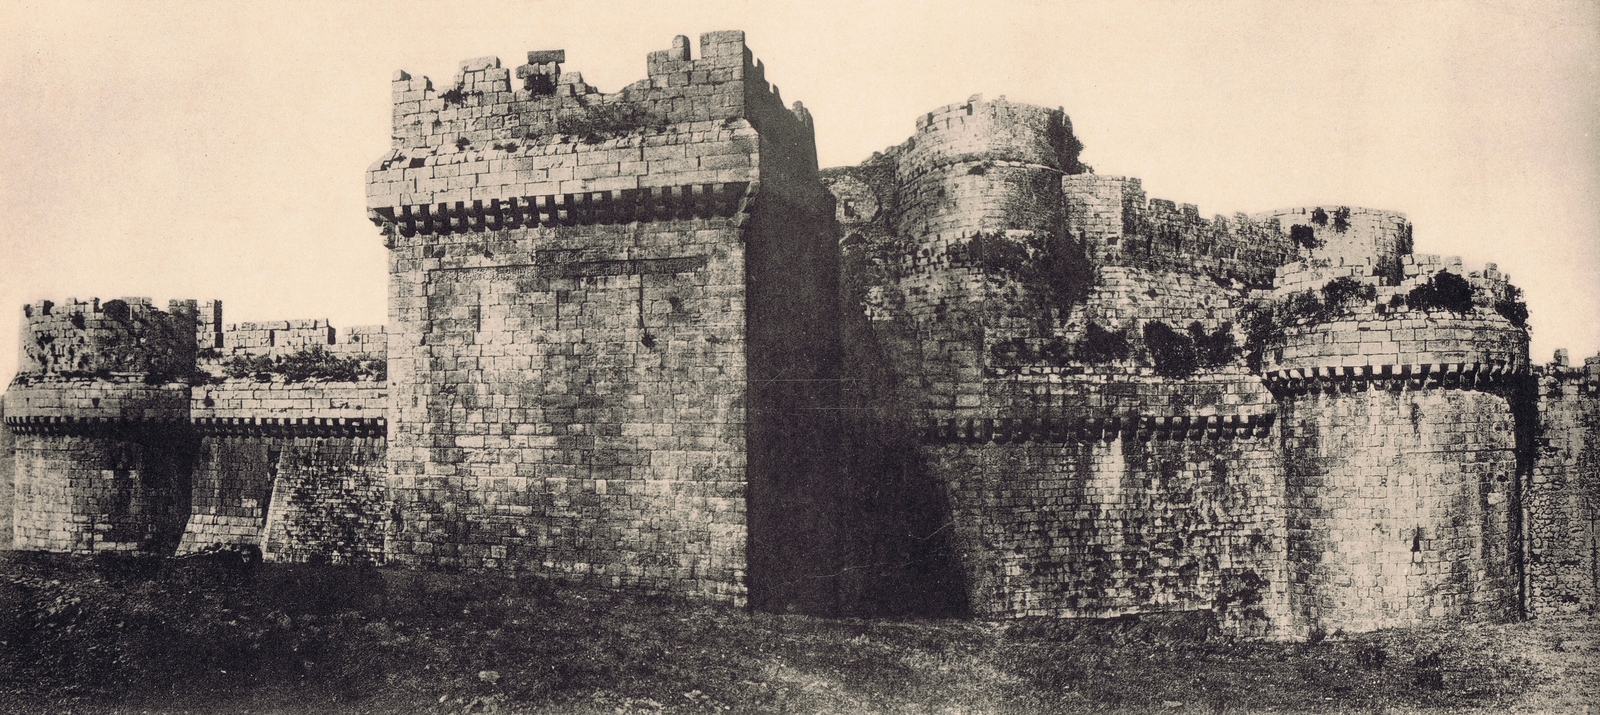 Photographie du château du Crac des Chevaliers (Krak)